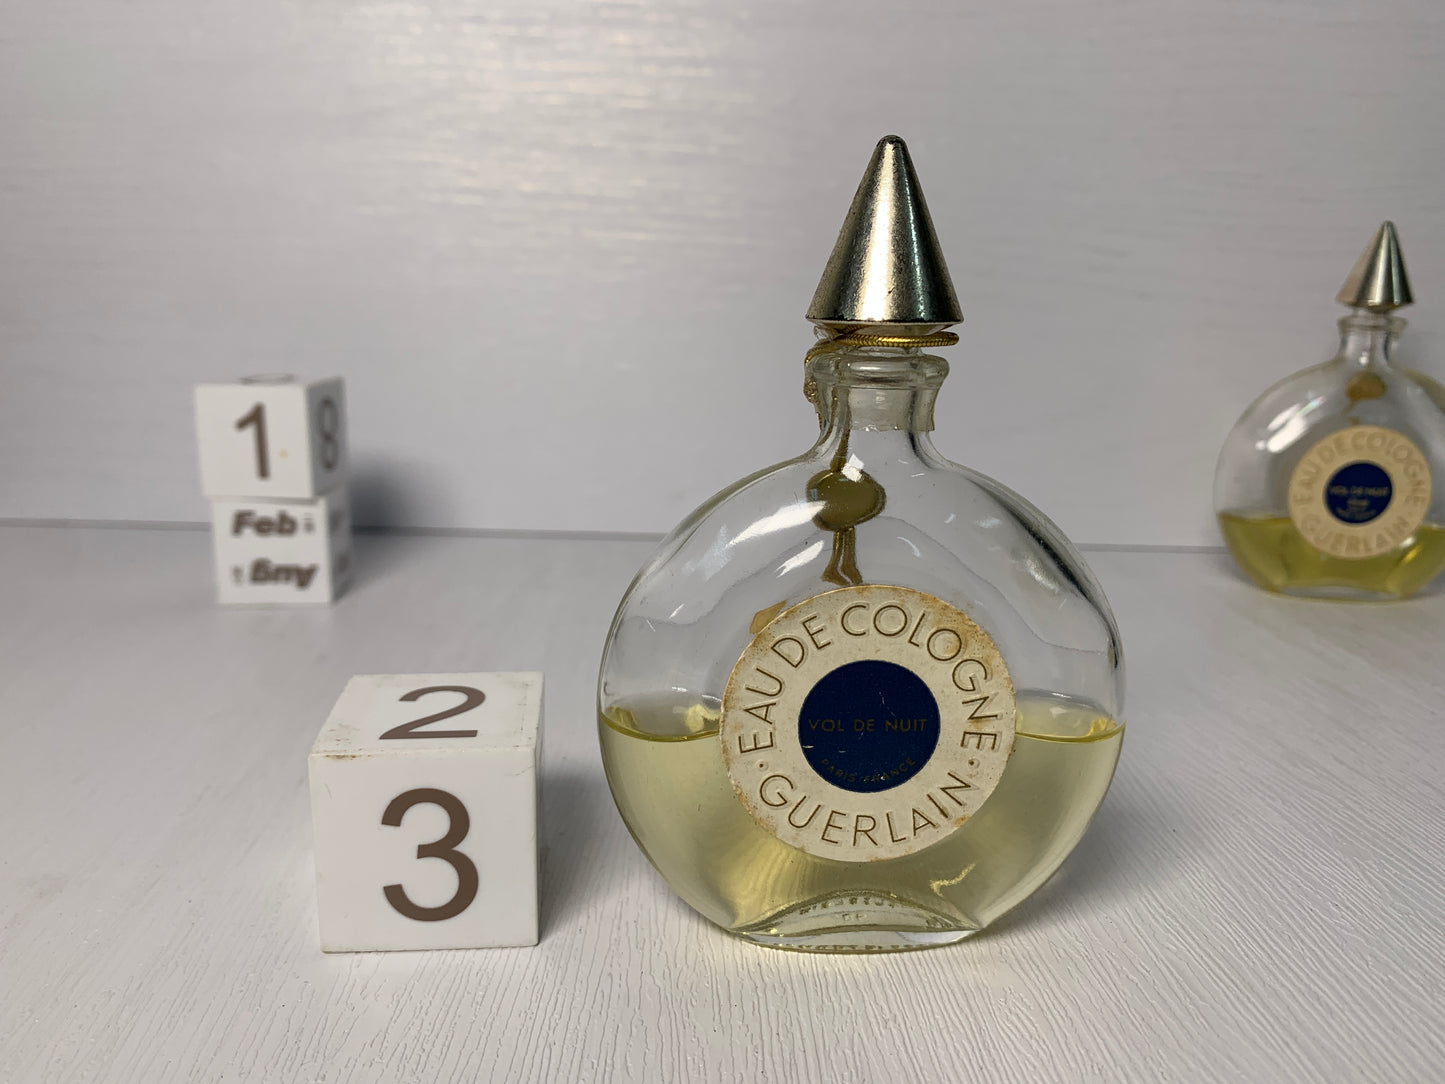 Rare Guerlain Vol de nuit eau de cologne 100ml  45ml  3.4 oz 1.5 oz- 11FEB22